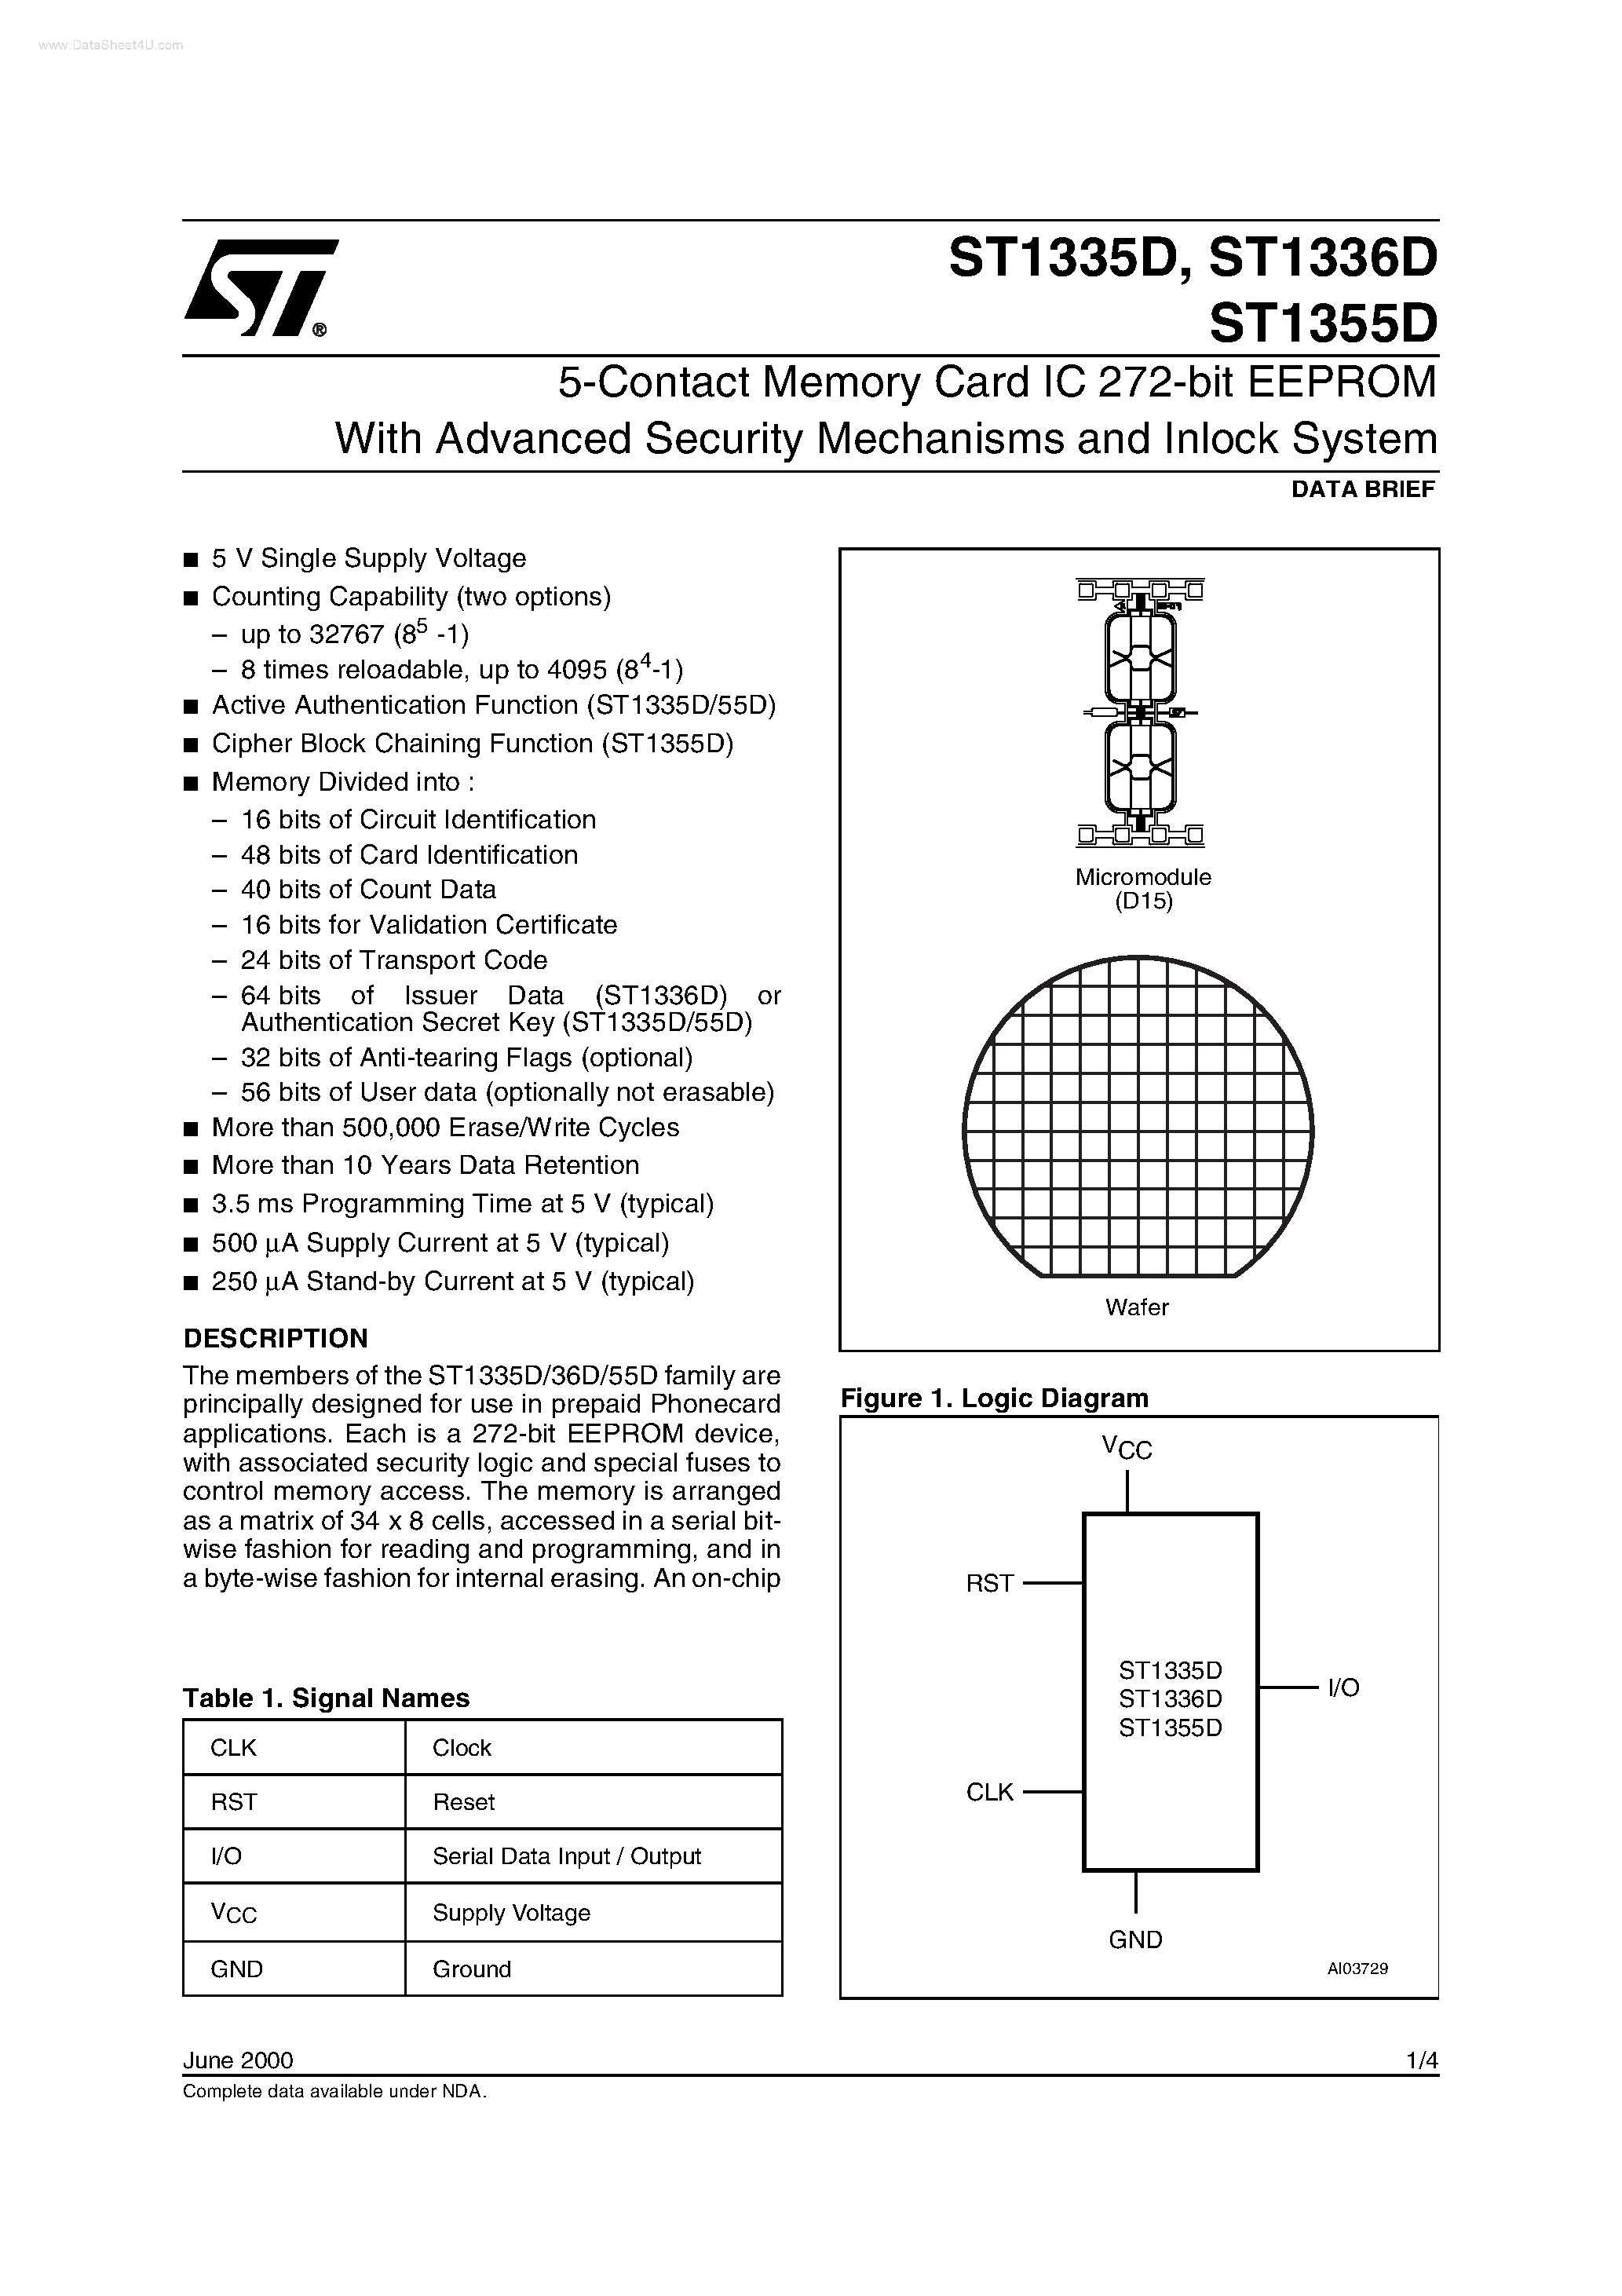 Даташит ST1335D - (ST1335D / ST1336D / ST1355D) 5-Contact Memory Card IC 272-bit EEPROM страница 1